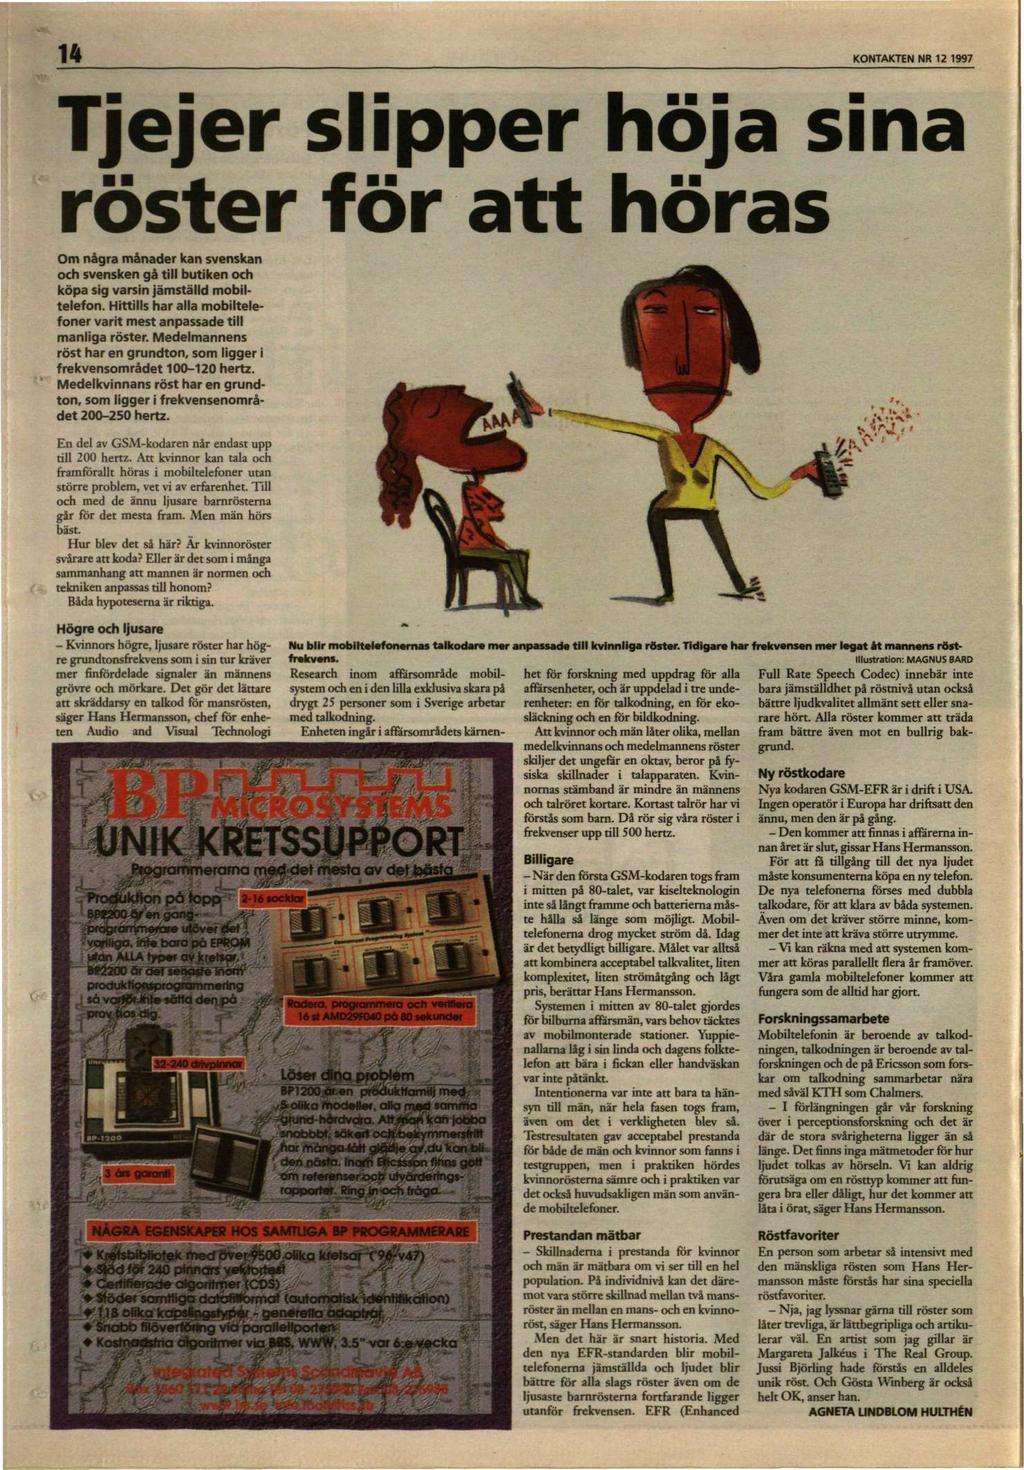 KONTAKTEN NR 12 1997 Tjejer slipper höja sina röster för att höras Om några månader kan svenskan och svensken gå till butiken och köpa sig varsin jämställd mobiltelefon.